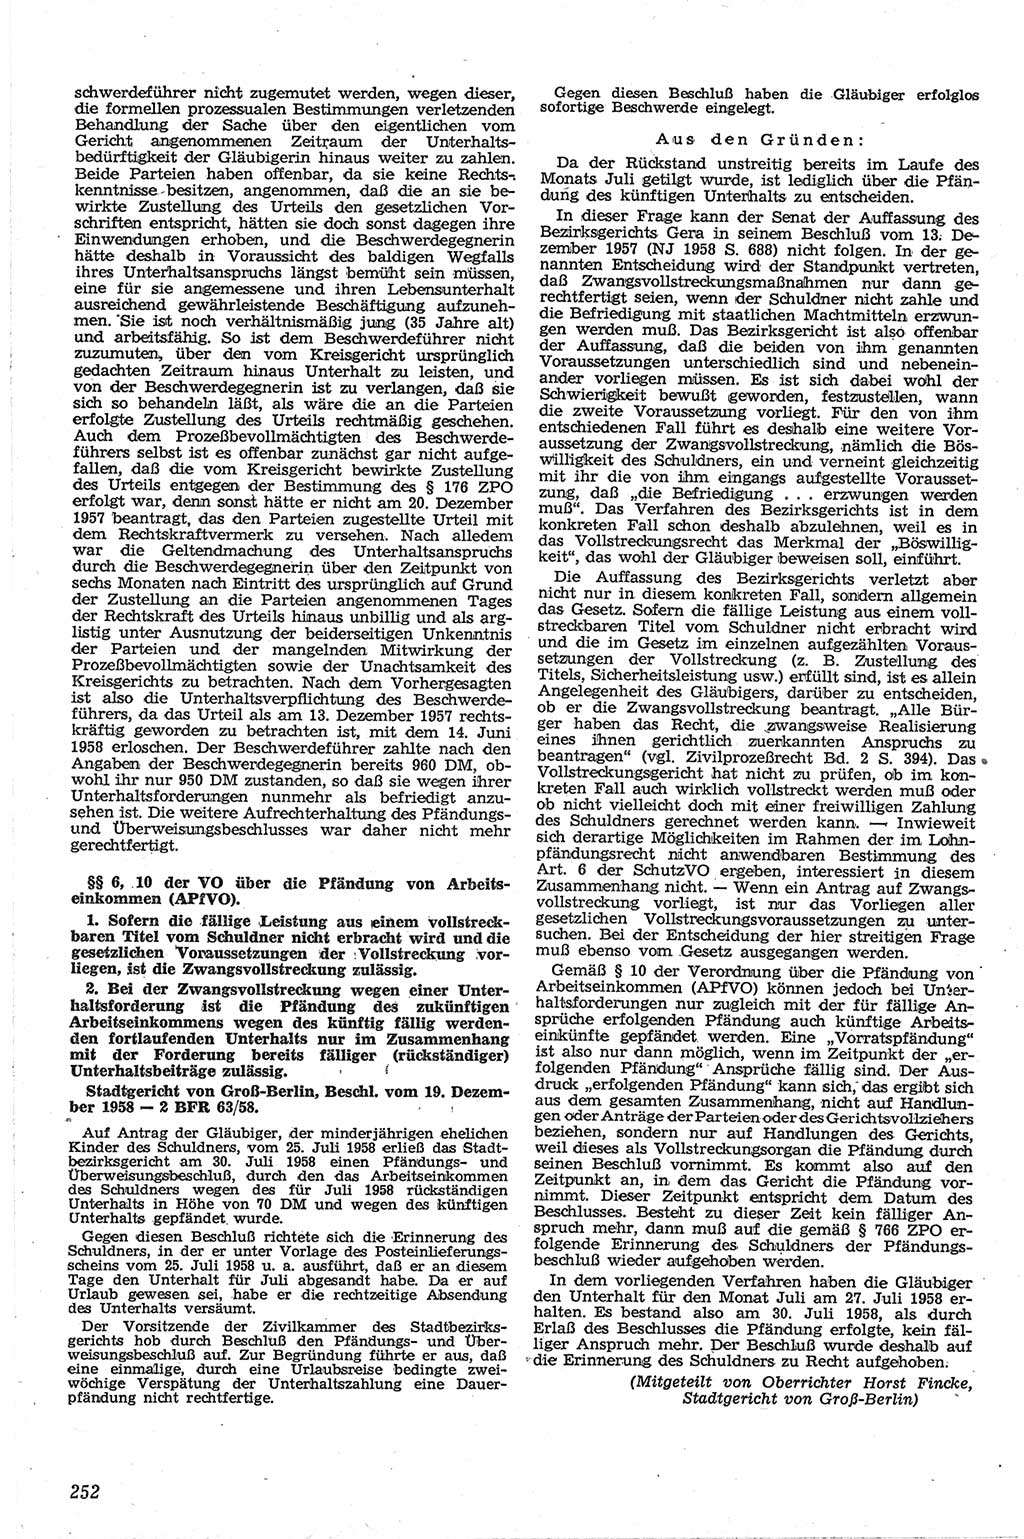 Neue Justiz (NJ), Zeitschrift für Recht und Rechtswissenschaft [Deutsche Demokratische Republik (DDR)], 13. Jahrgang 1959, Seite 252 (NJ DDR 1959, S. 252)